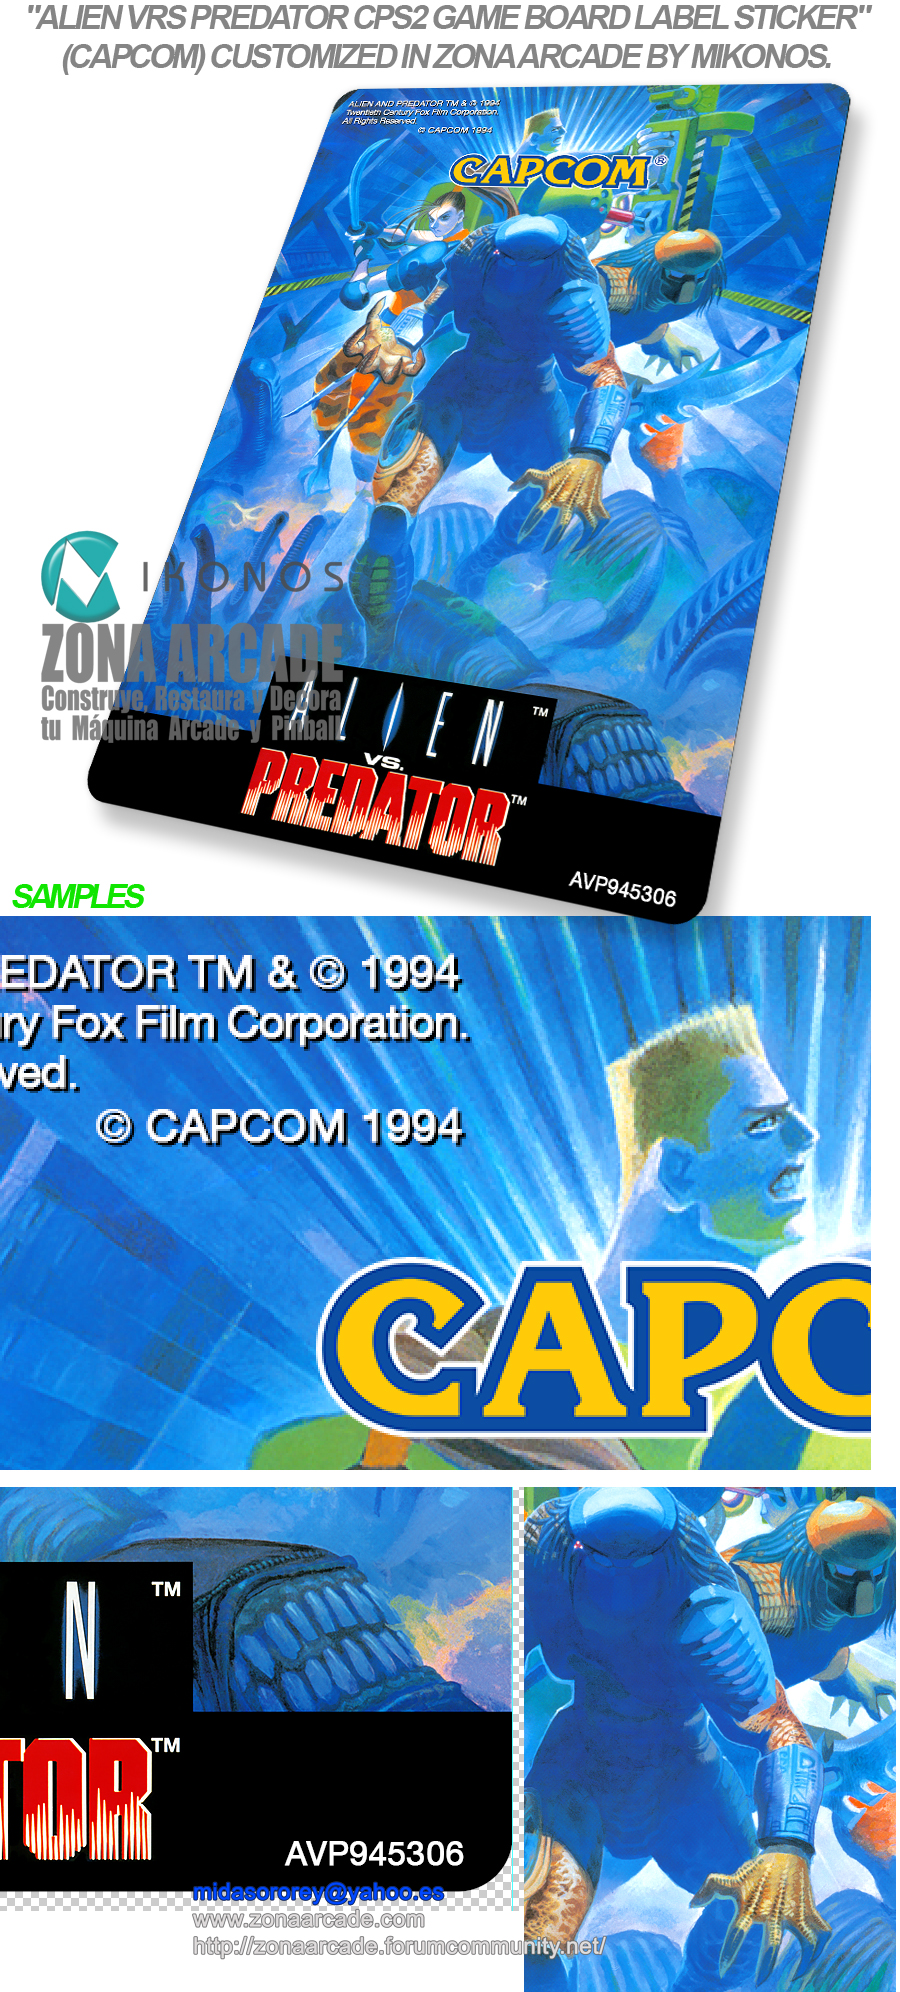 Alien-Vs-Predator-Custom-CPS2-Game-Board-Label-Sticker-Reproduced-Mikonos1